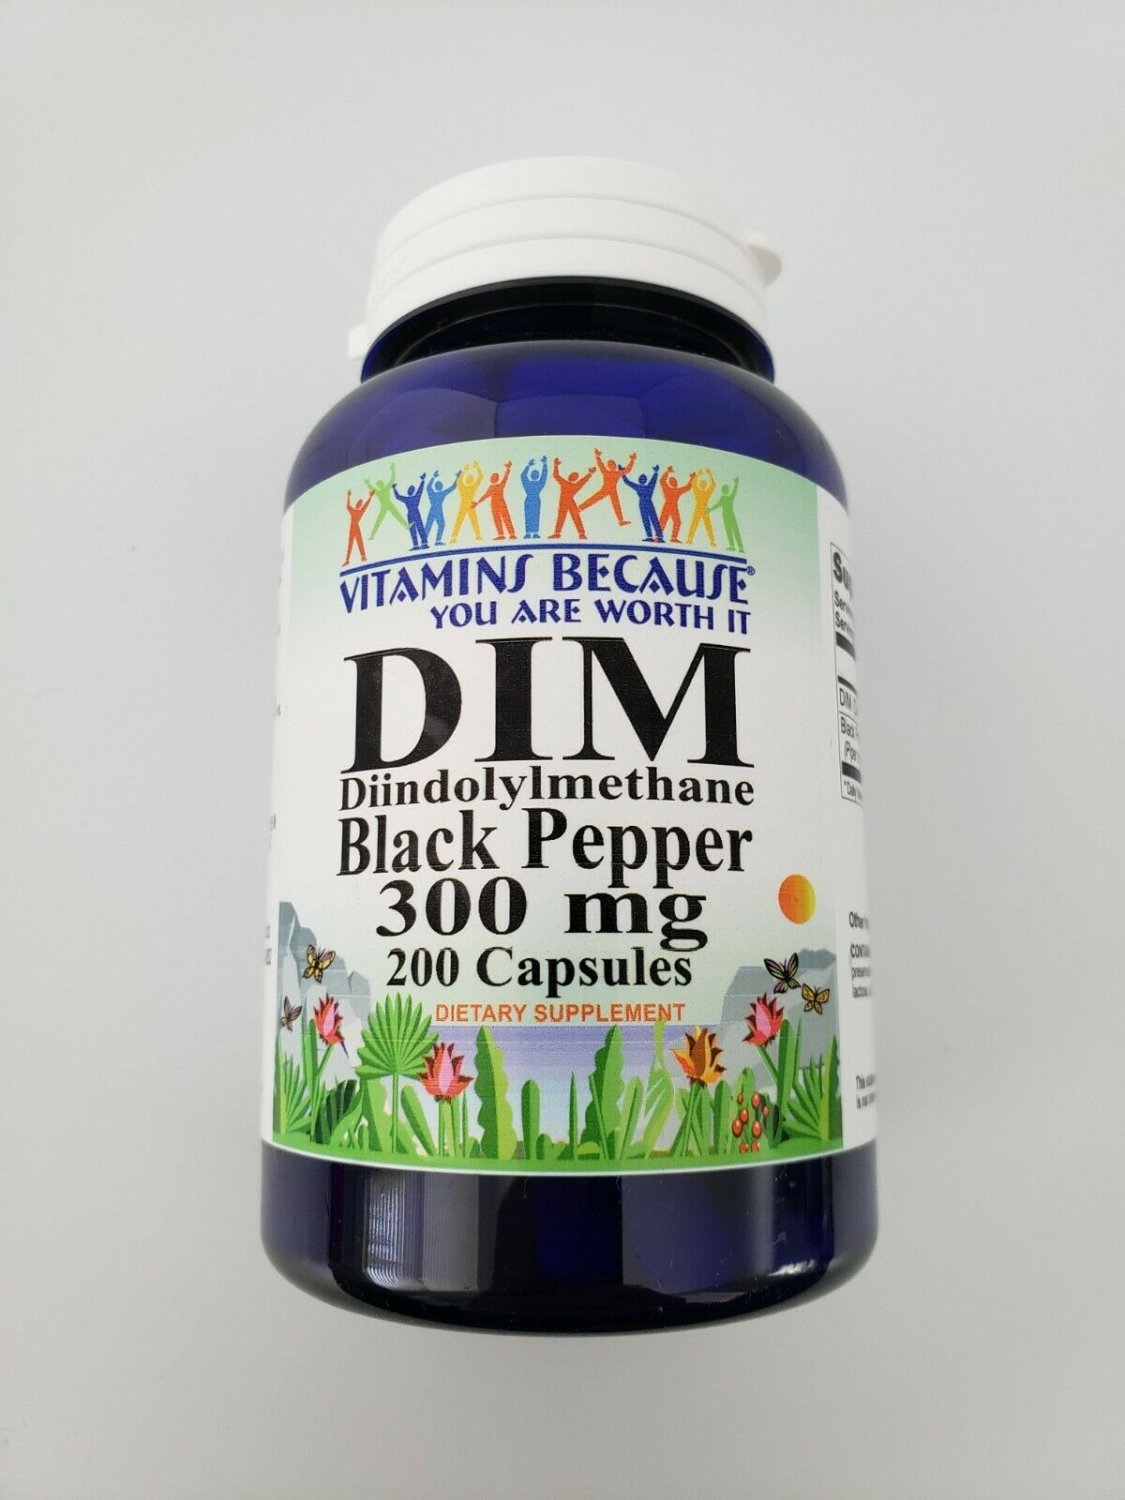 Vitamins Because DIM Black Pepper 300 mg 200 Capsules